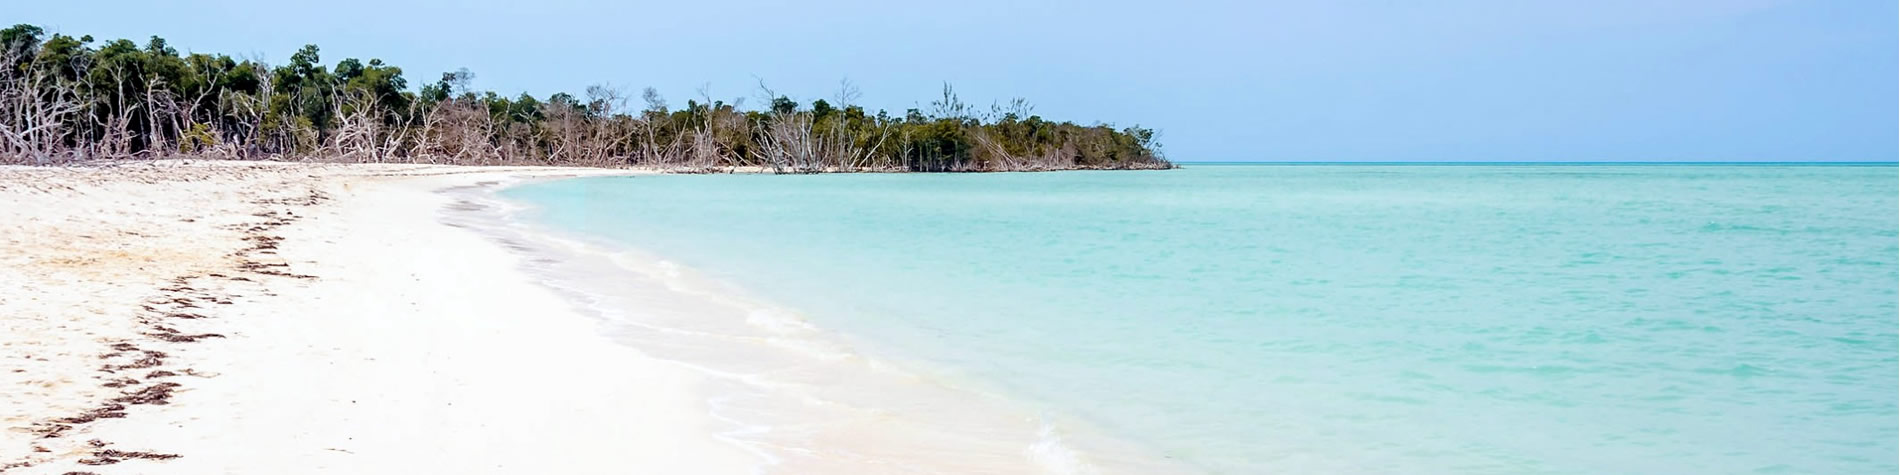 Vista Playa Cayo Levisa  en Pinar del Rio, Cuba